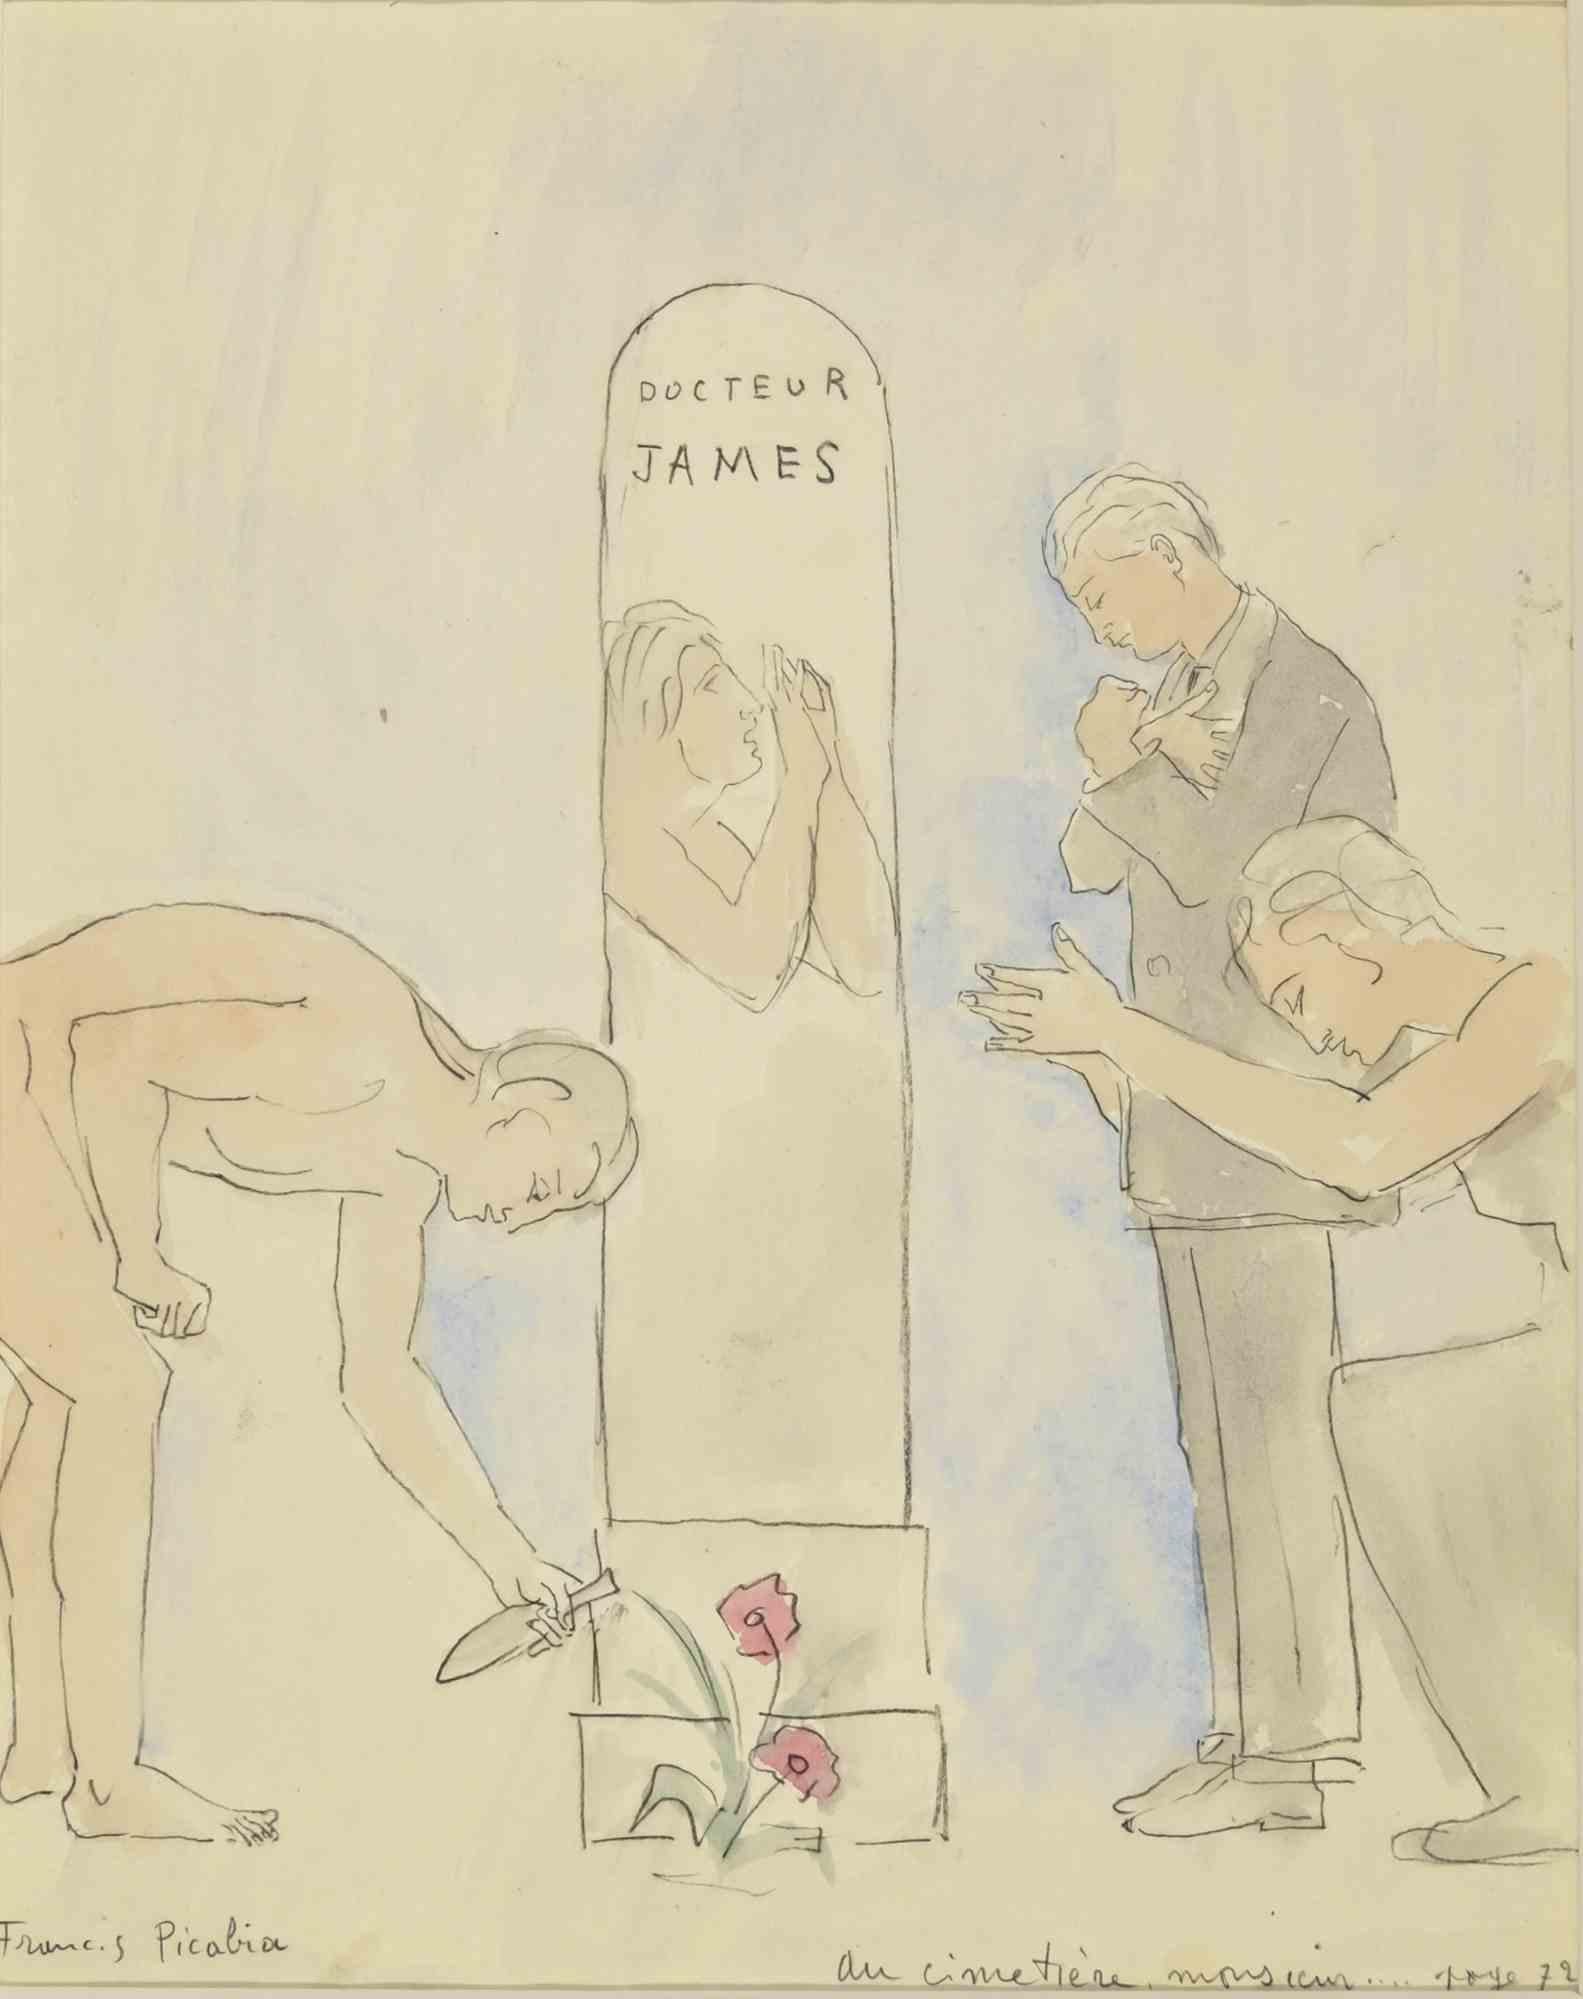 Au Cimetière Monsieur- Pencil and Watercolor on Paper by F. Picabia - 1931